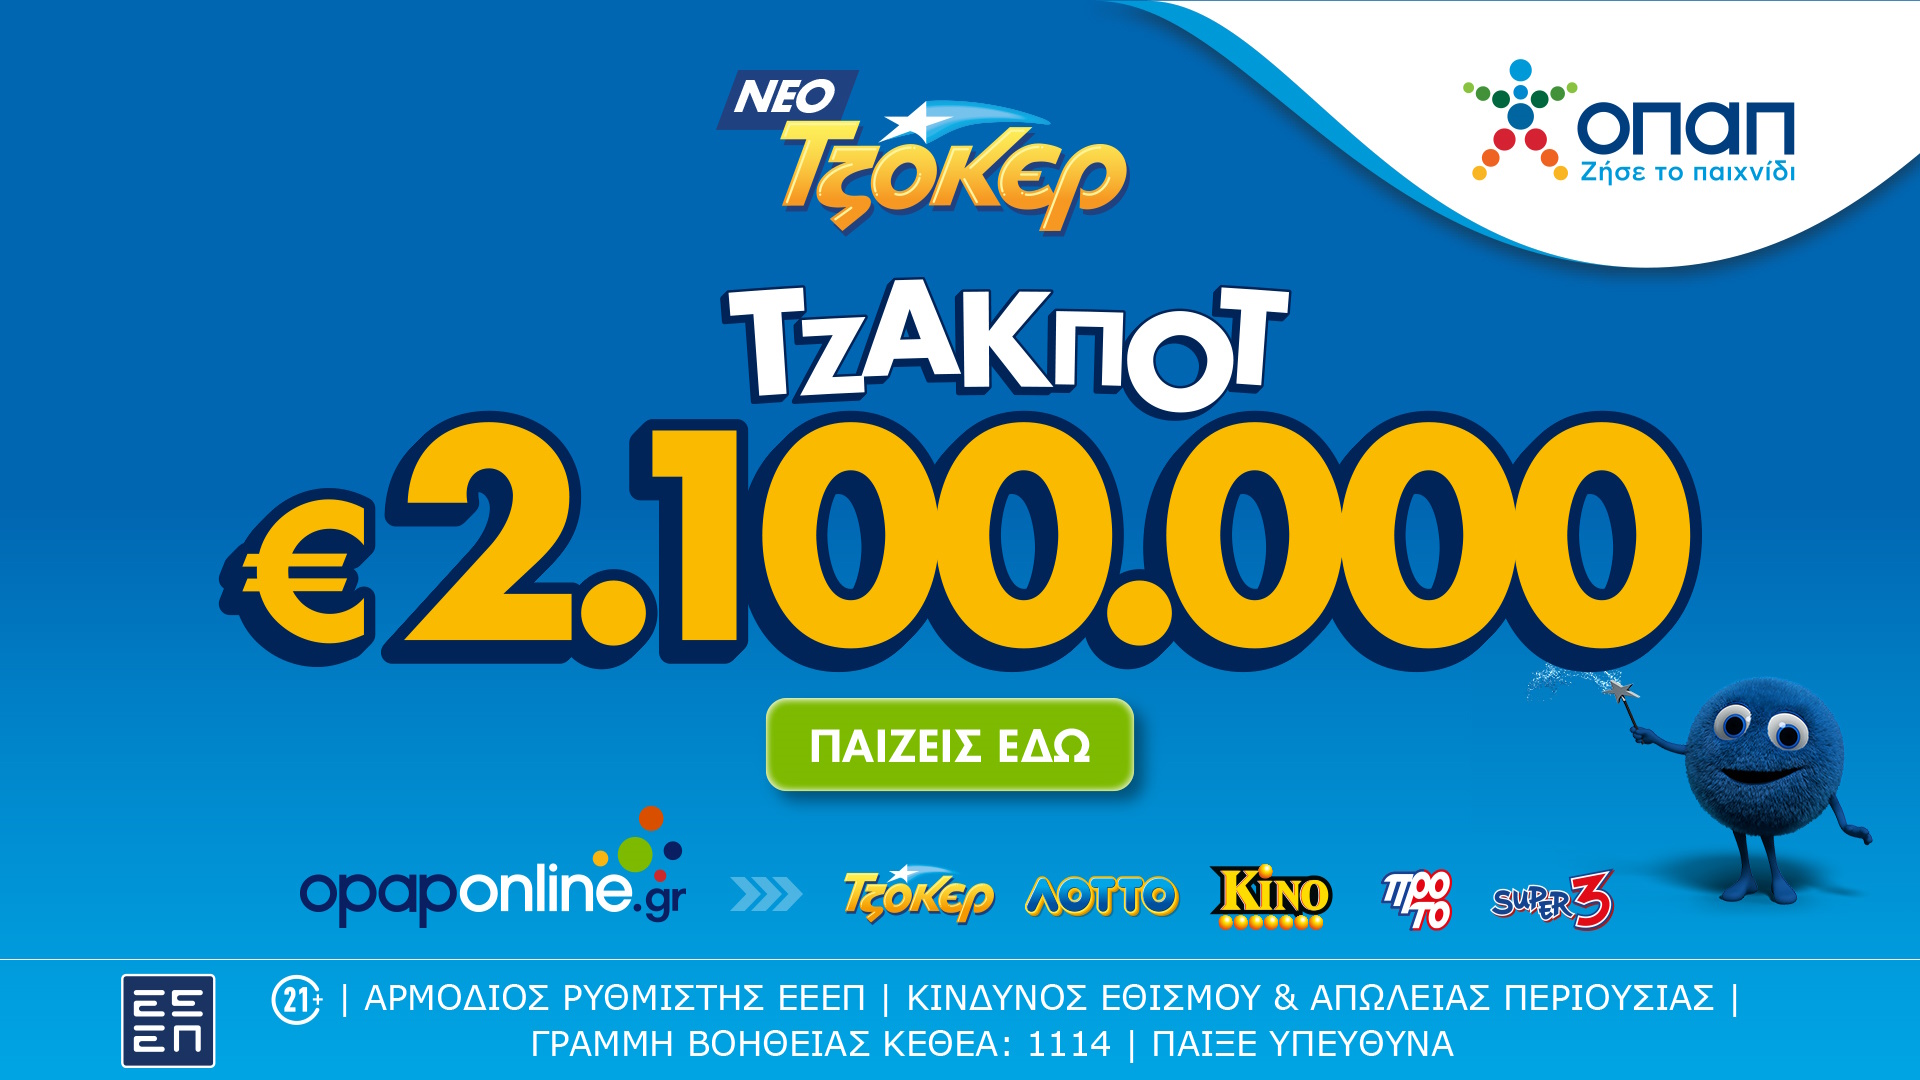 Μέσω του opaponline.gr η διαδικτυακή κατάθεση δελτίων για το αποψινό τζακ ποτ 2,1 εκατ. ευρώ στο ΤΖΟΚΕΡ – 100.000 ευρώ σε κάθε τυχερό 5άρι